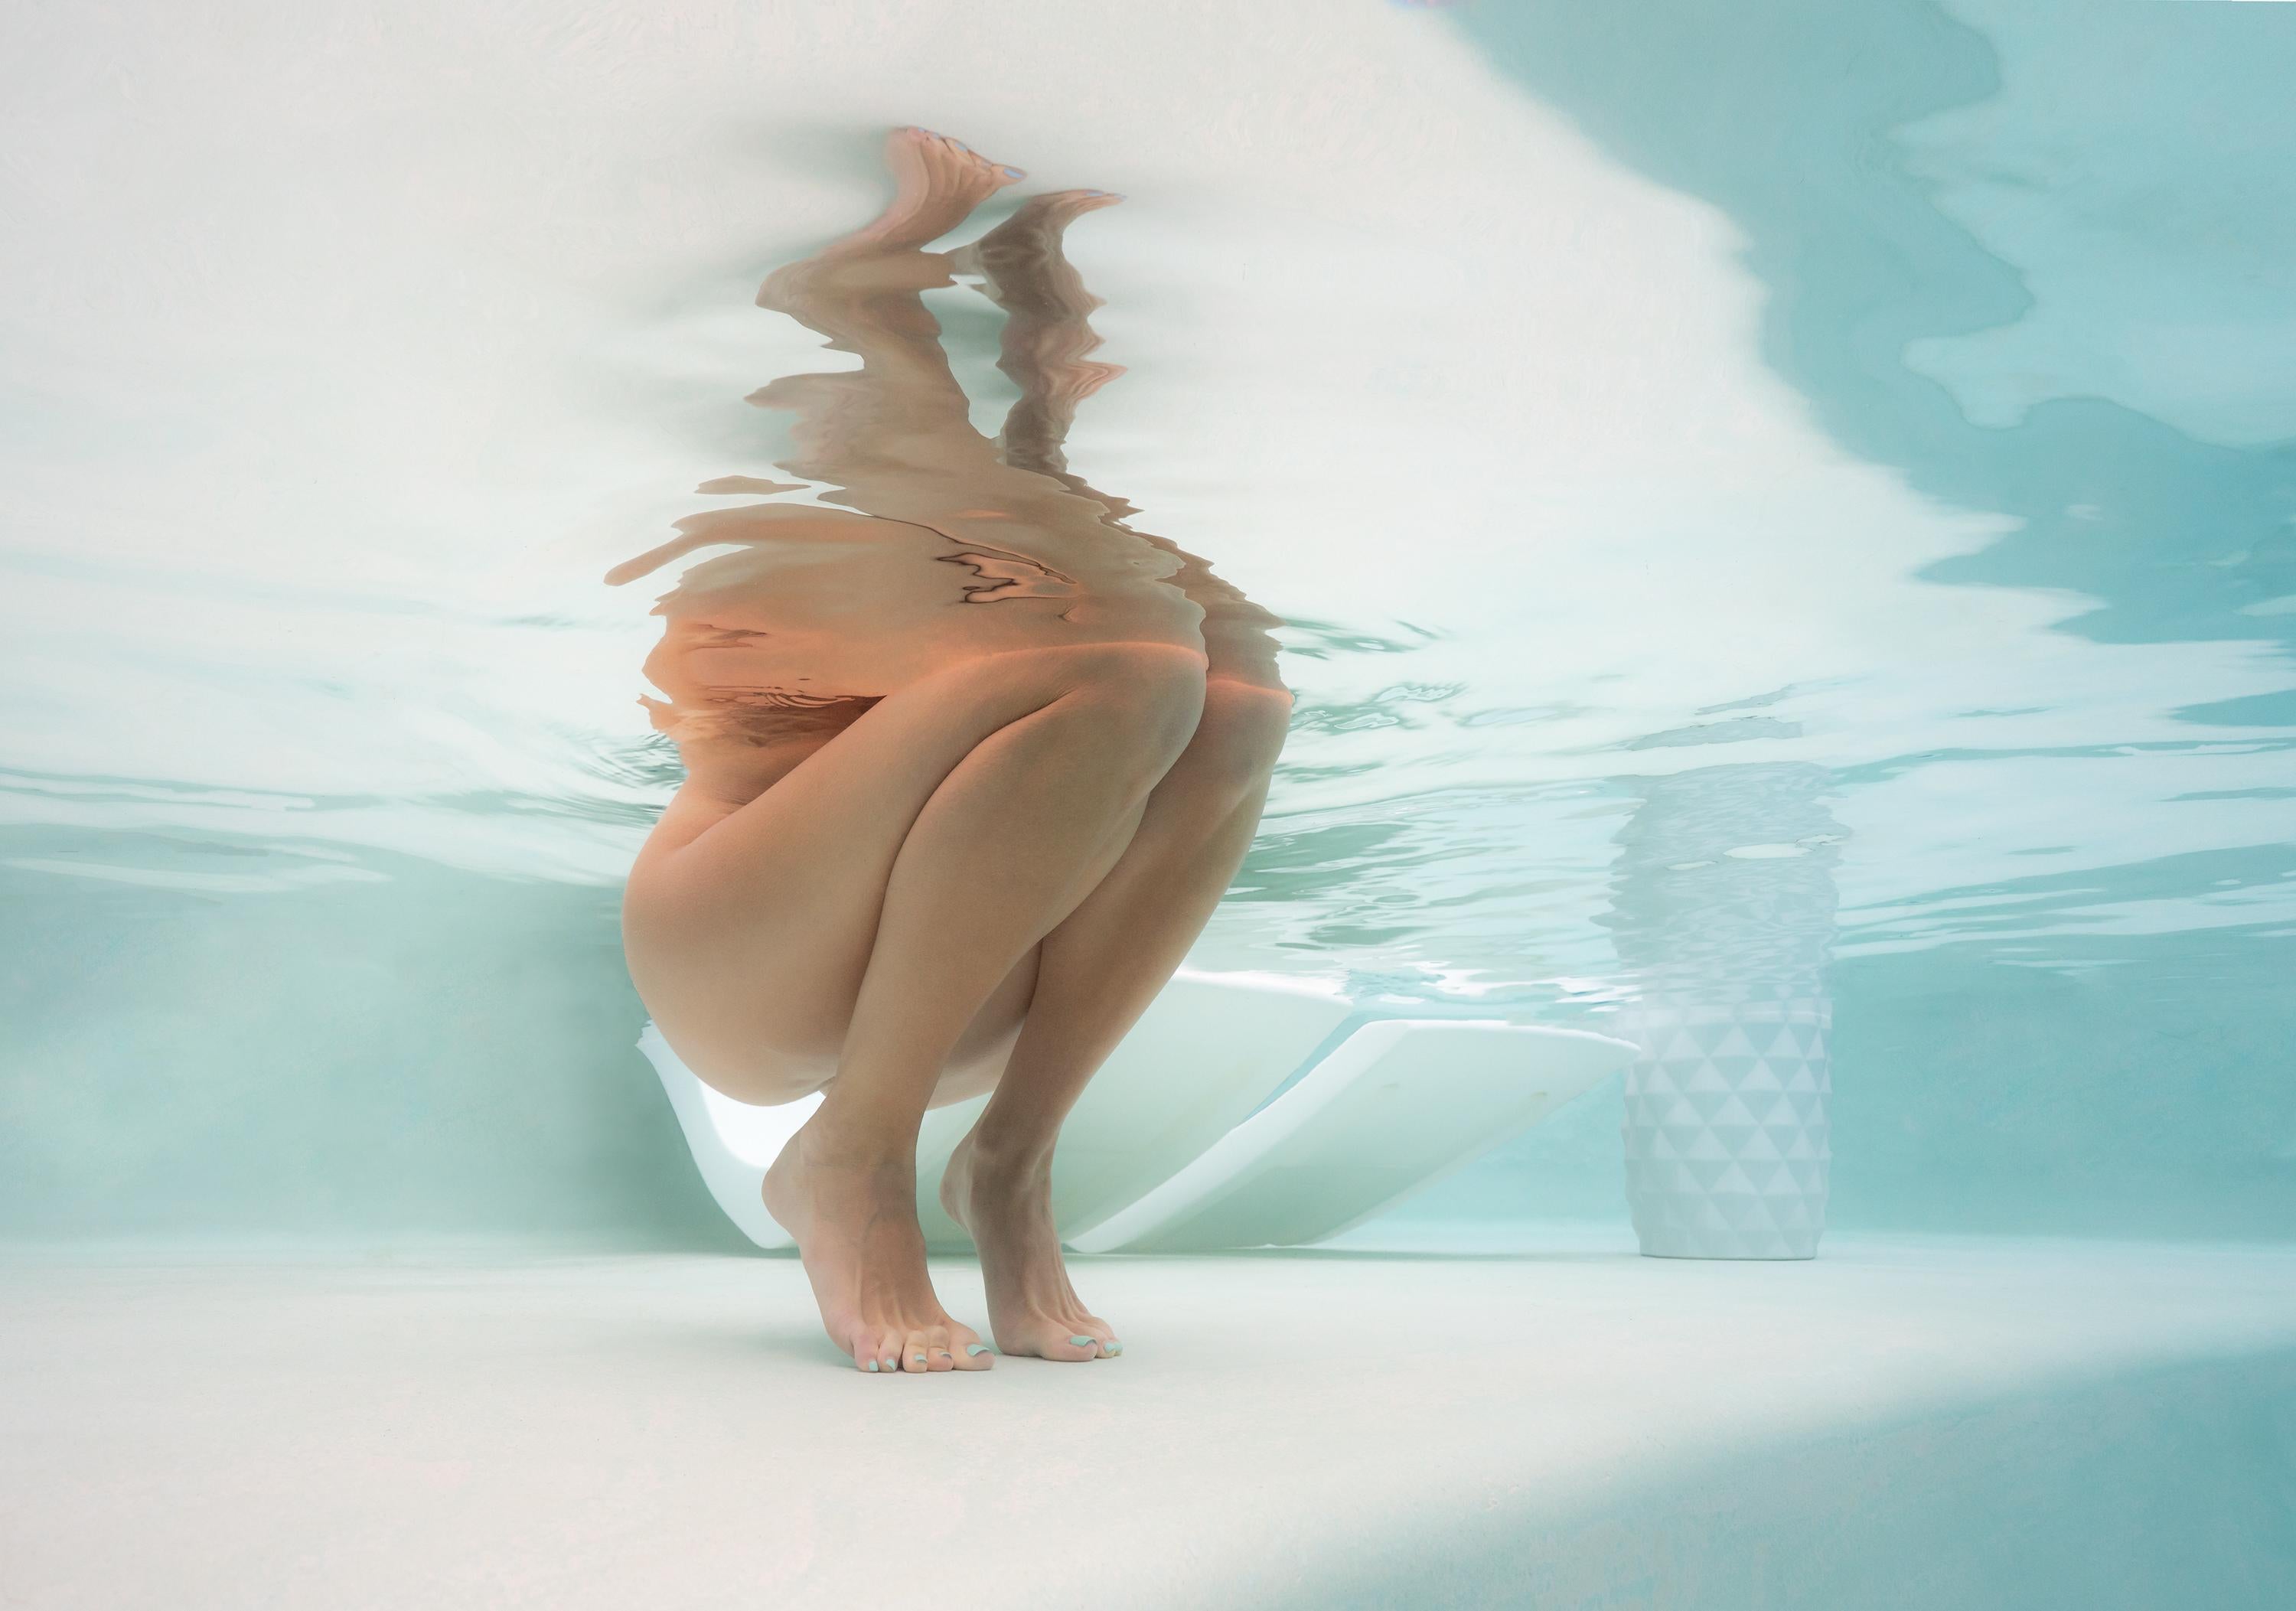 Alex Sher Figurative Photograph - Pristine - underwater nude photograph - archival pigment print 35х50"